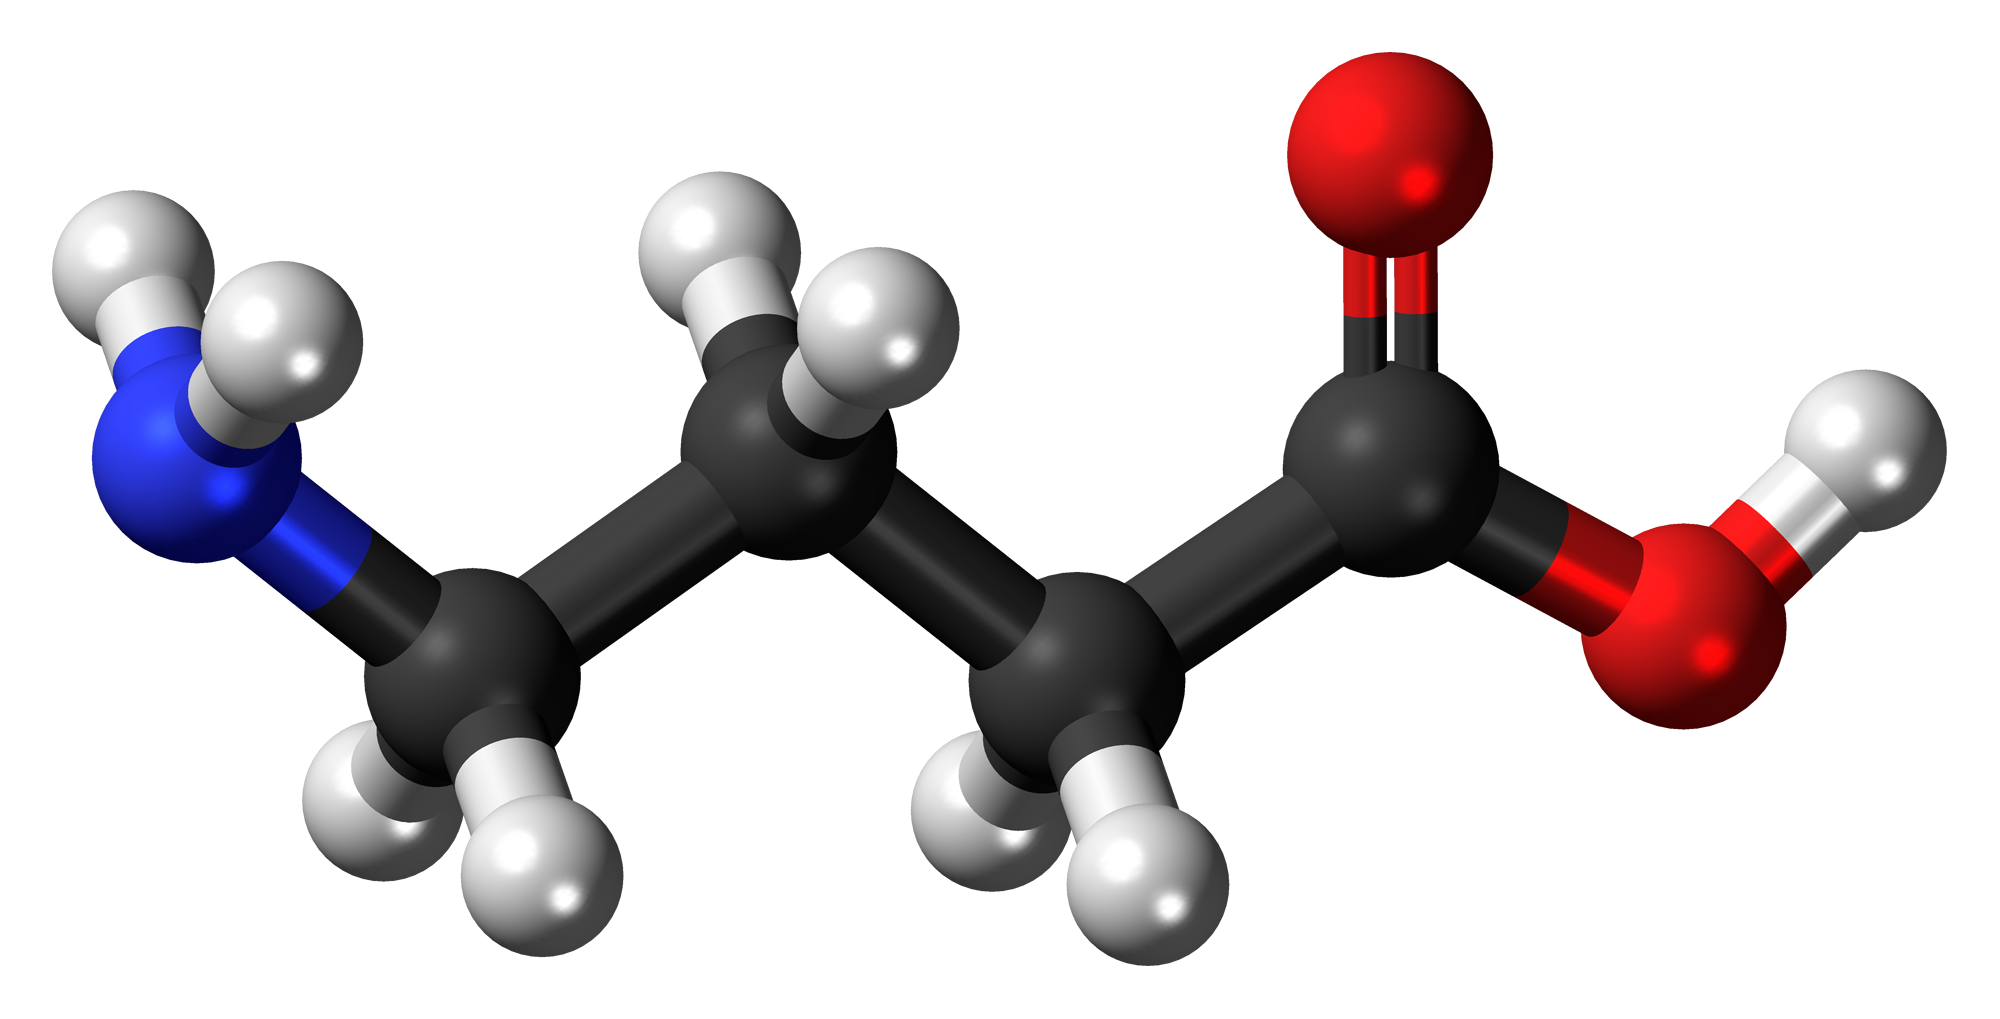 γ-aminobutírico ou ácido gama-aminobutírico, geralmente conhecido pela sua sigla GABA, é a forma mais comum de ácido γ-aminobutírico.